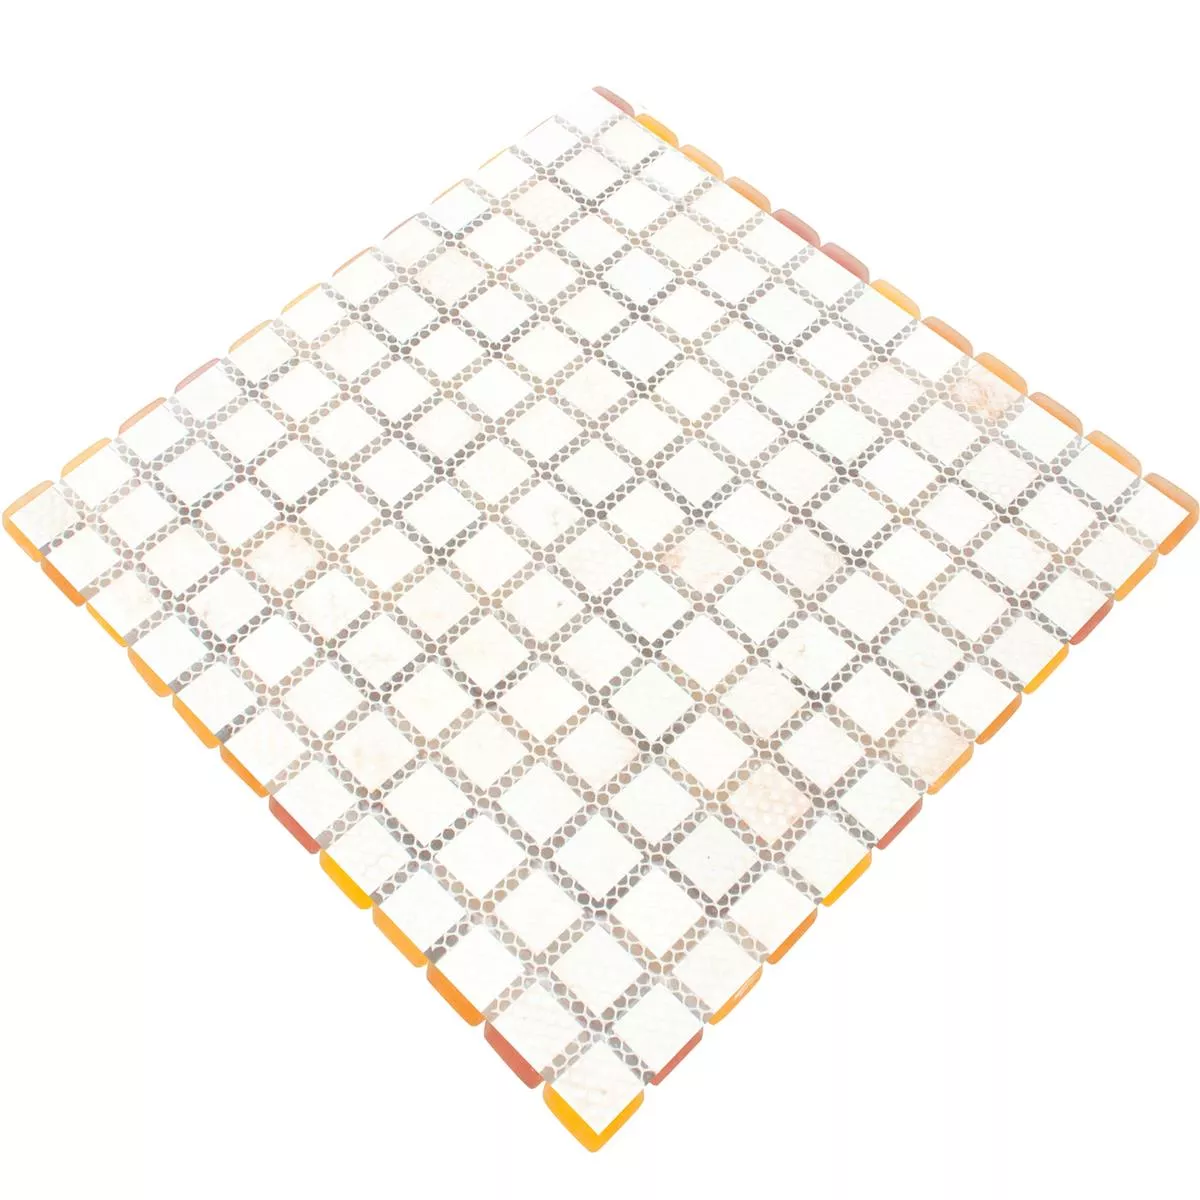 Glass Mosaic Tiles Ponterio Frosted Orange Mix